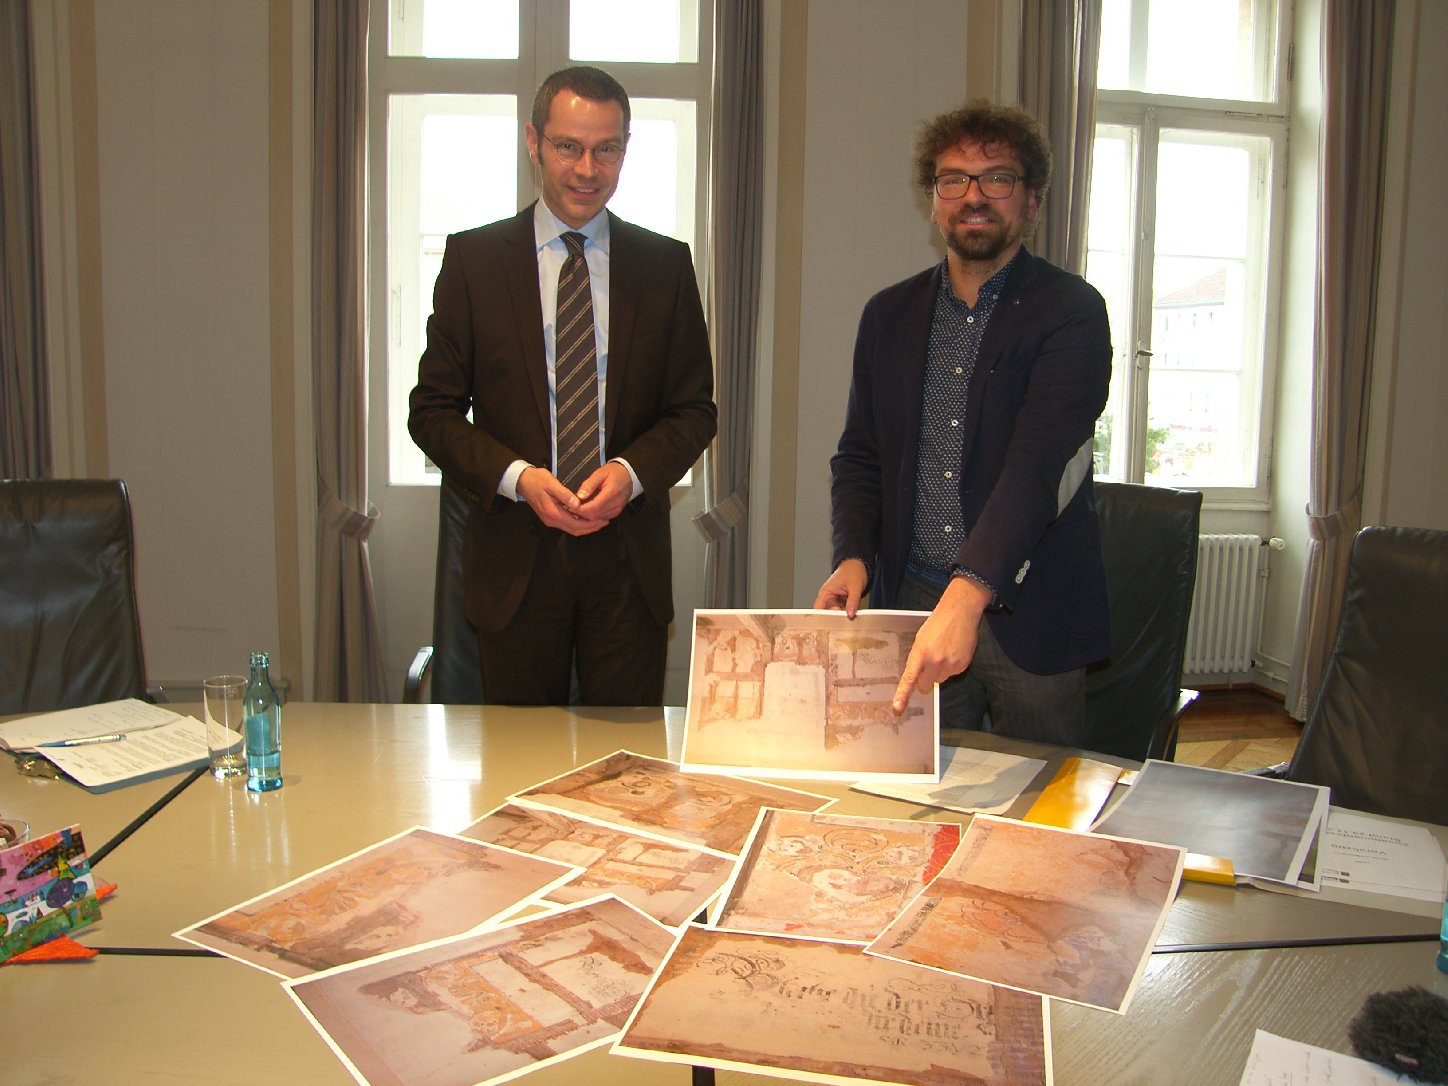 Bürgermeister Dr. Ingenthron und Denkmalpfleger Seitz haben zum Pressegespräch Fotomaterial mitgebracht. Foto: Pfalz-Express/Ahme